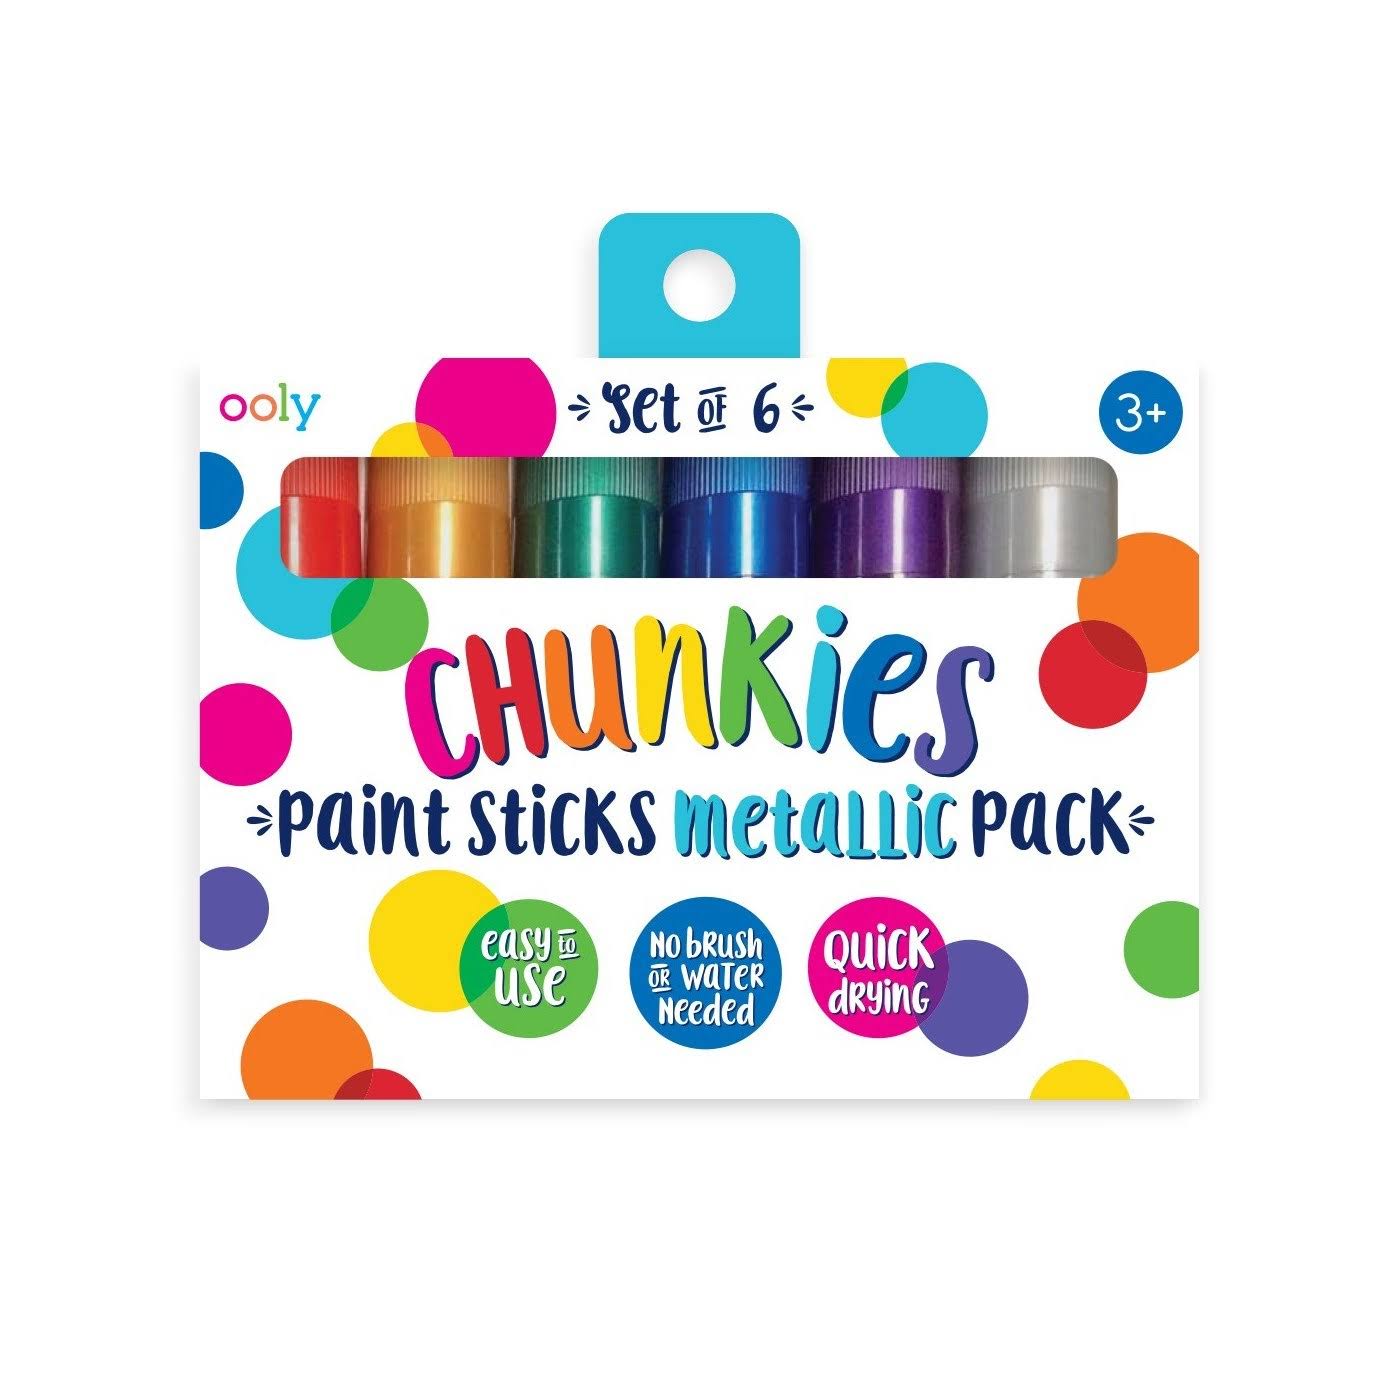 Ooly Chunkies Metallic Paint Sticks - Set of 6